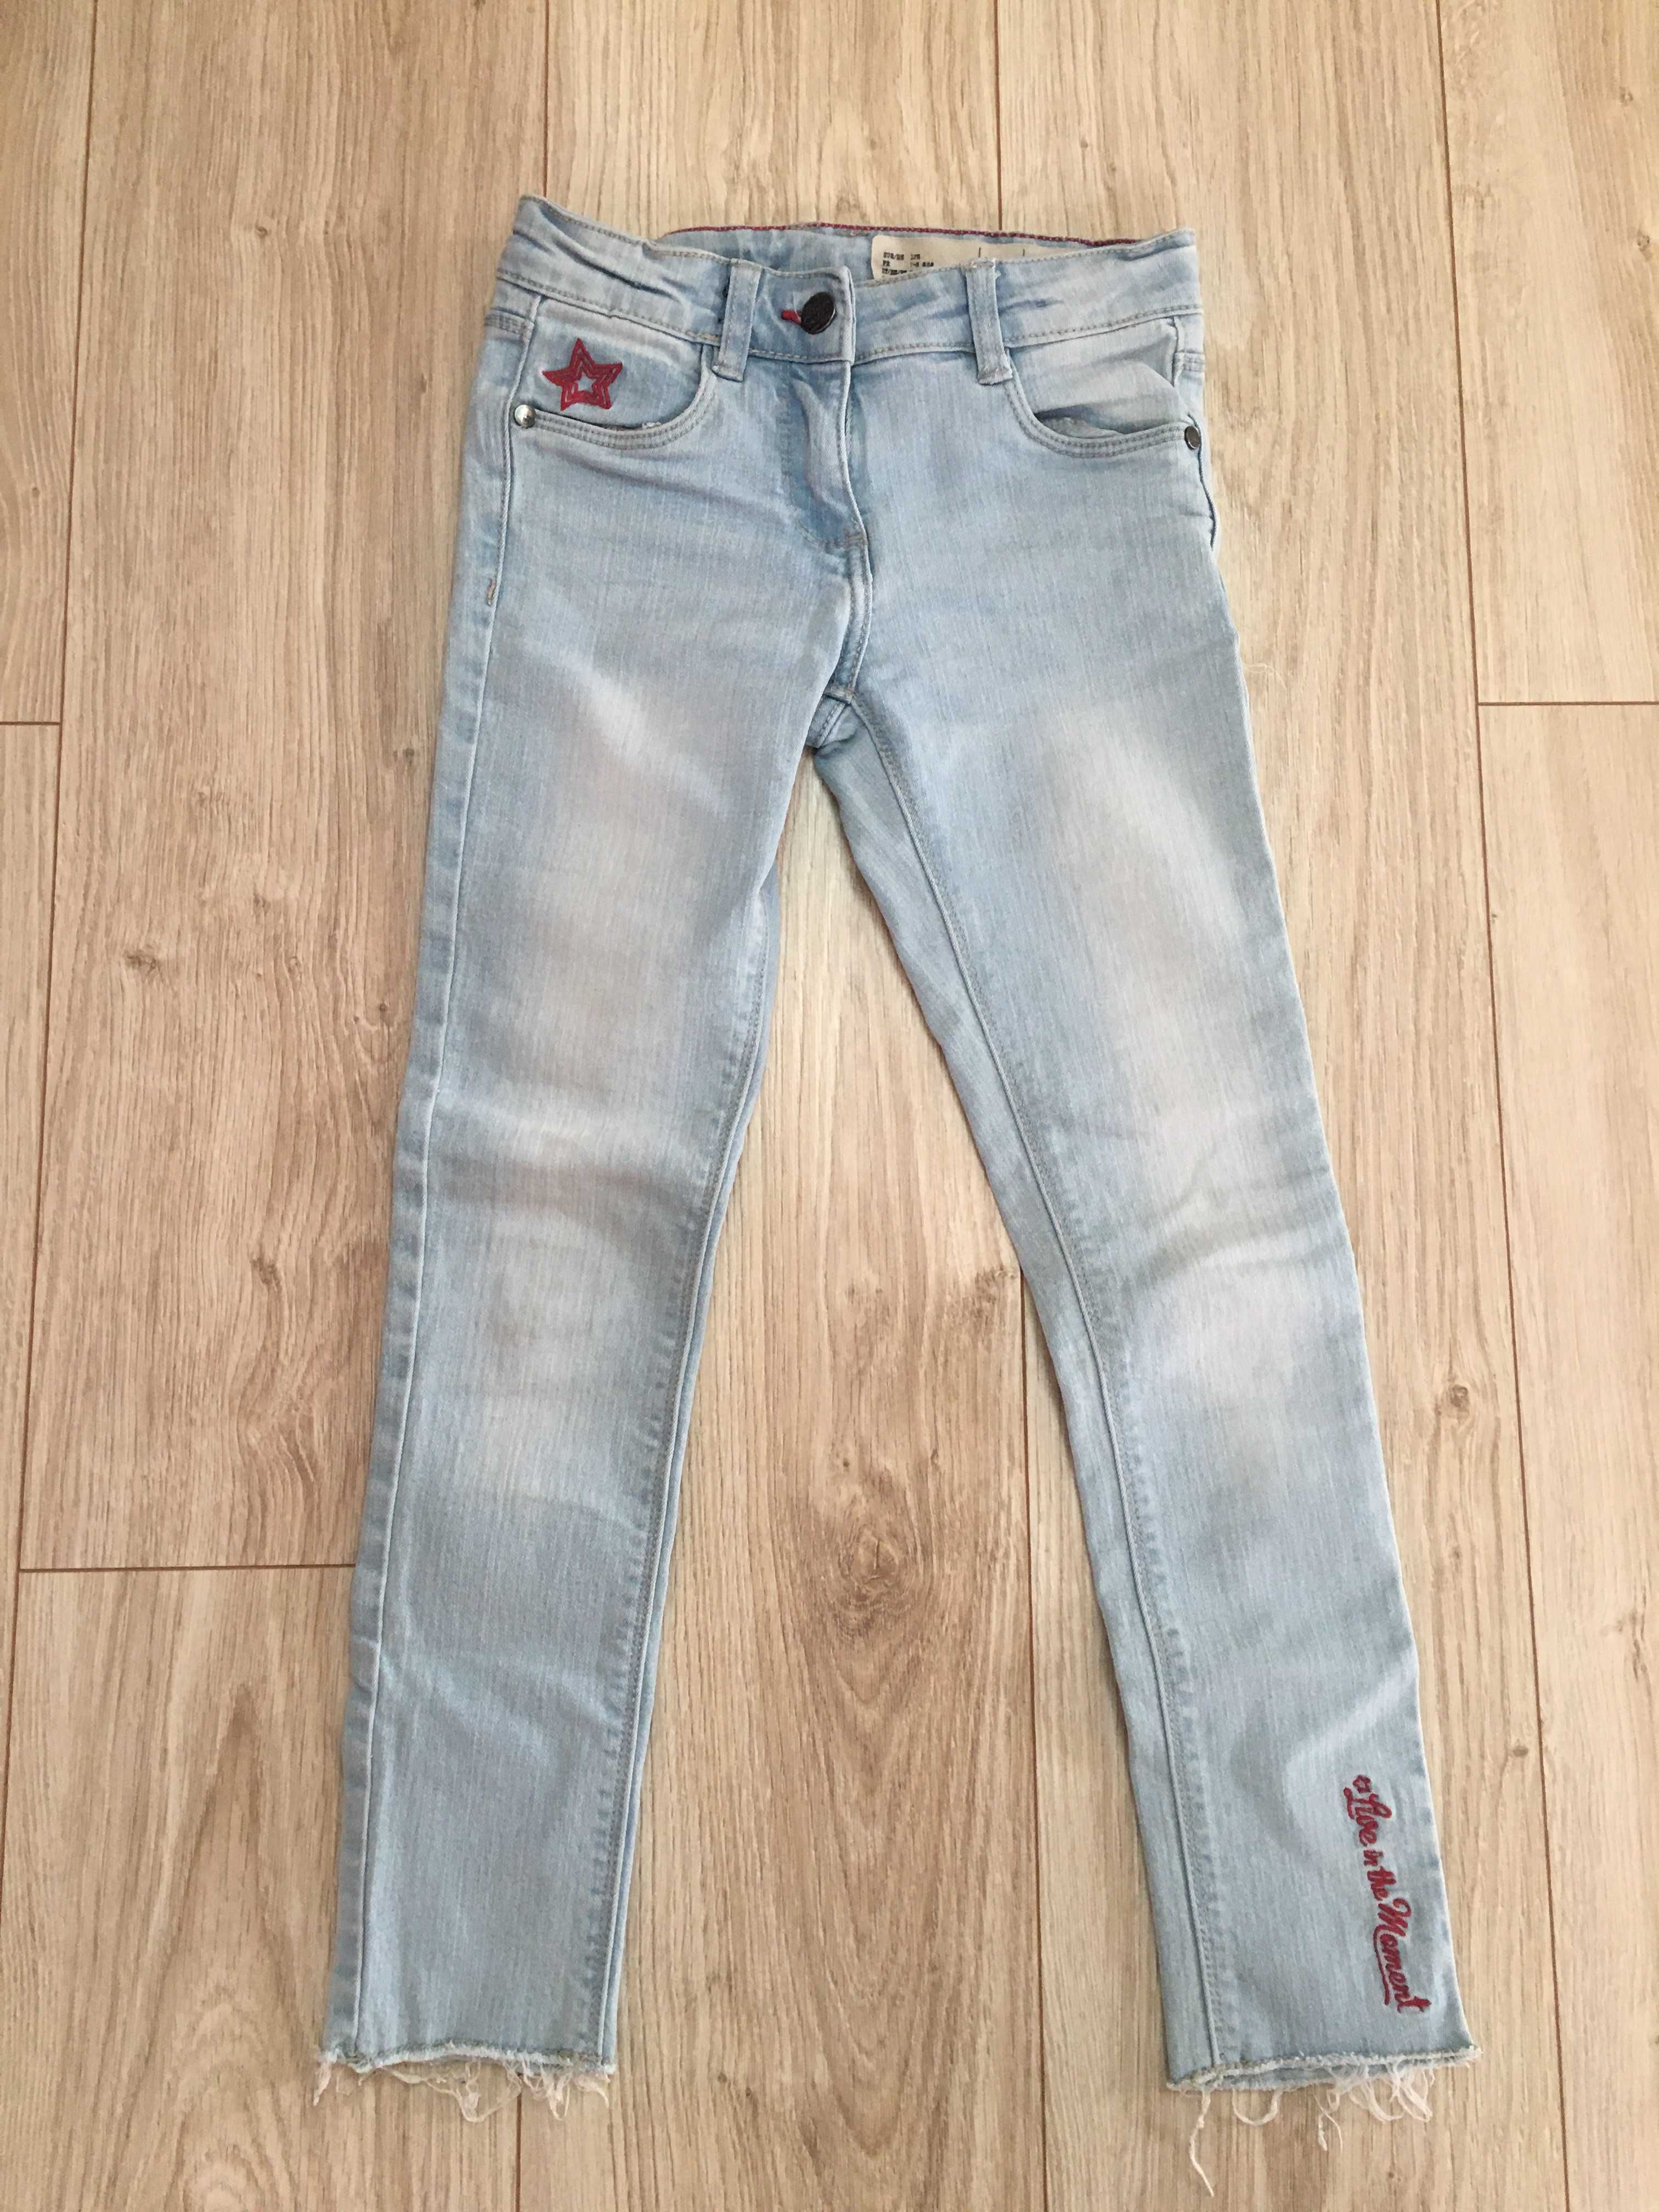 Spodnie jeansy Pepperts, rozmiar 128, 7-8 lat